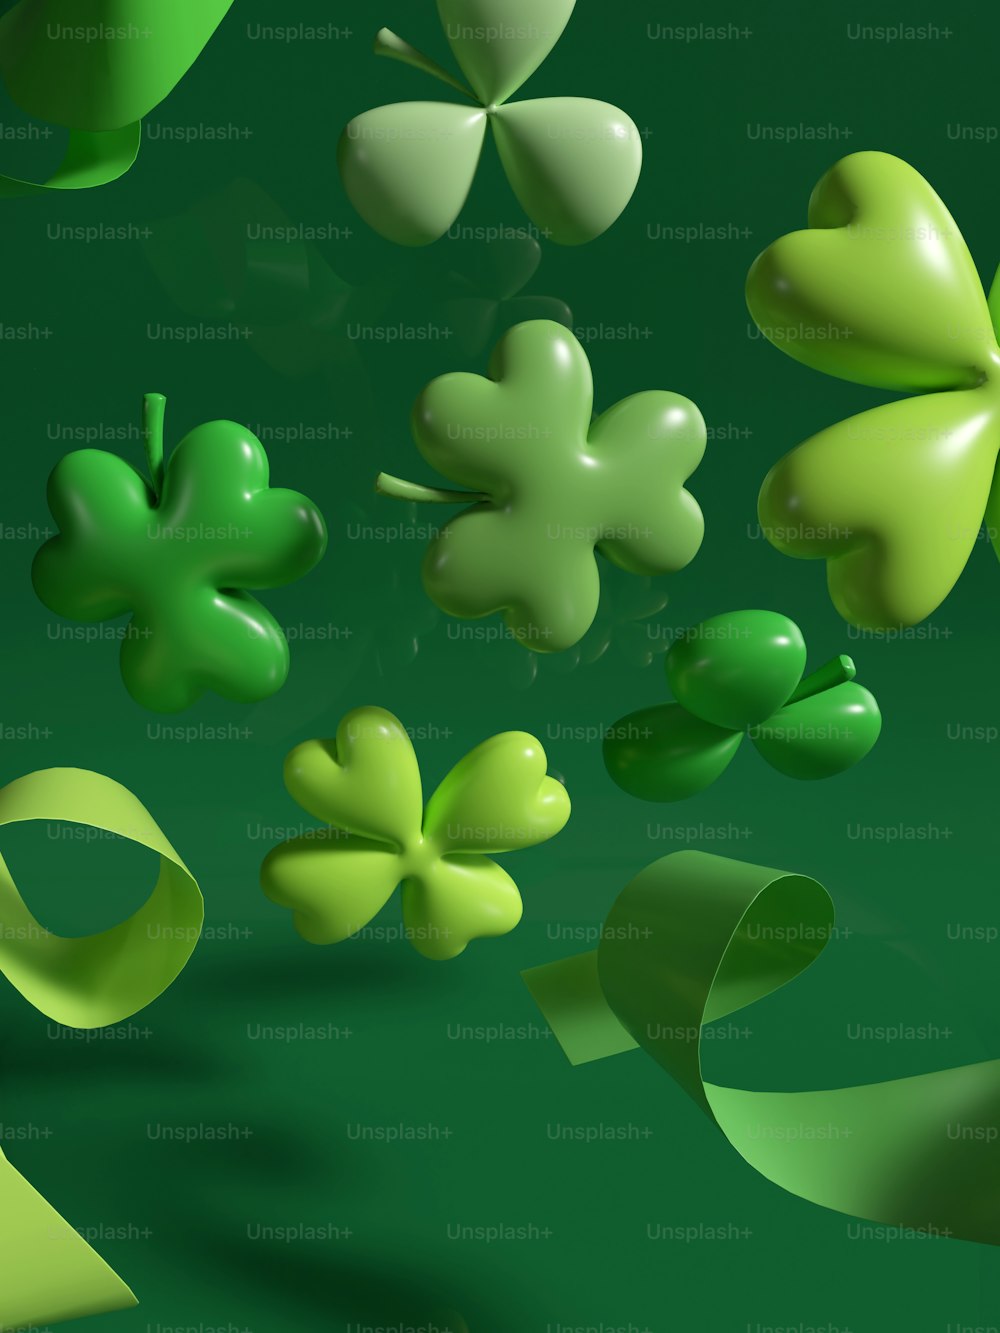 Un mazzo di trifogli verdi che fluttuano nell'aria